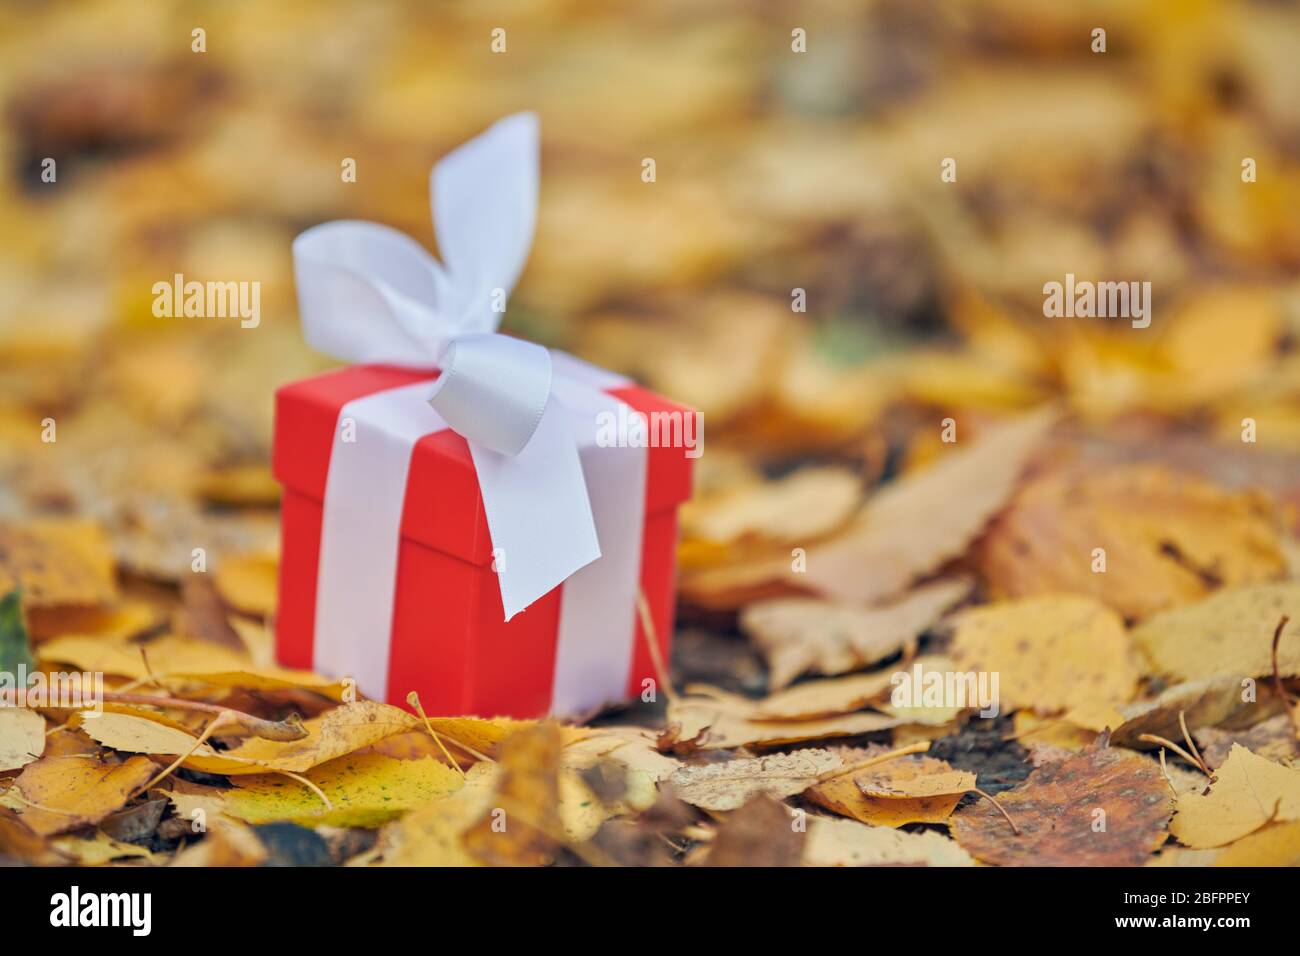 Geschenkbox im Herbst Blätter, Kopierraum. Geschenk für einen besonderen  Anlass: Jahrestag, Geburtstag, Hochzeit, Flitterwochen, Weihnachten oder  Valentinstag Stockfotografie - Alamy